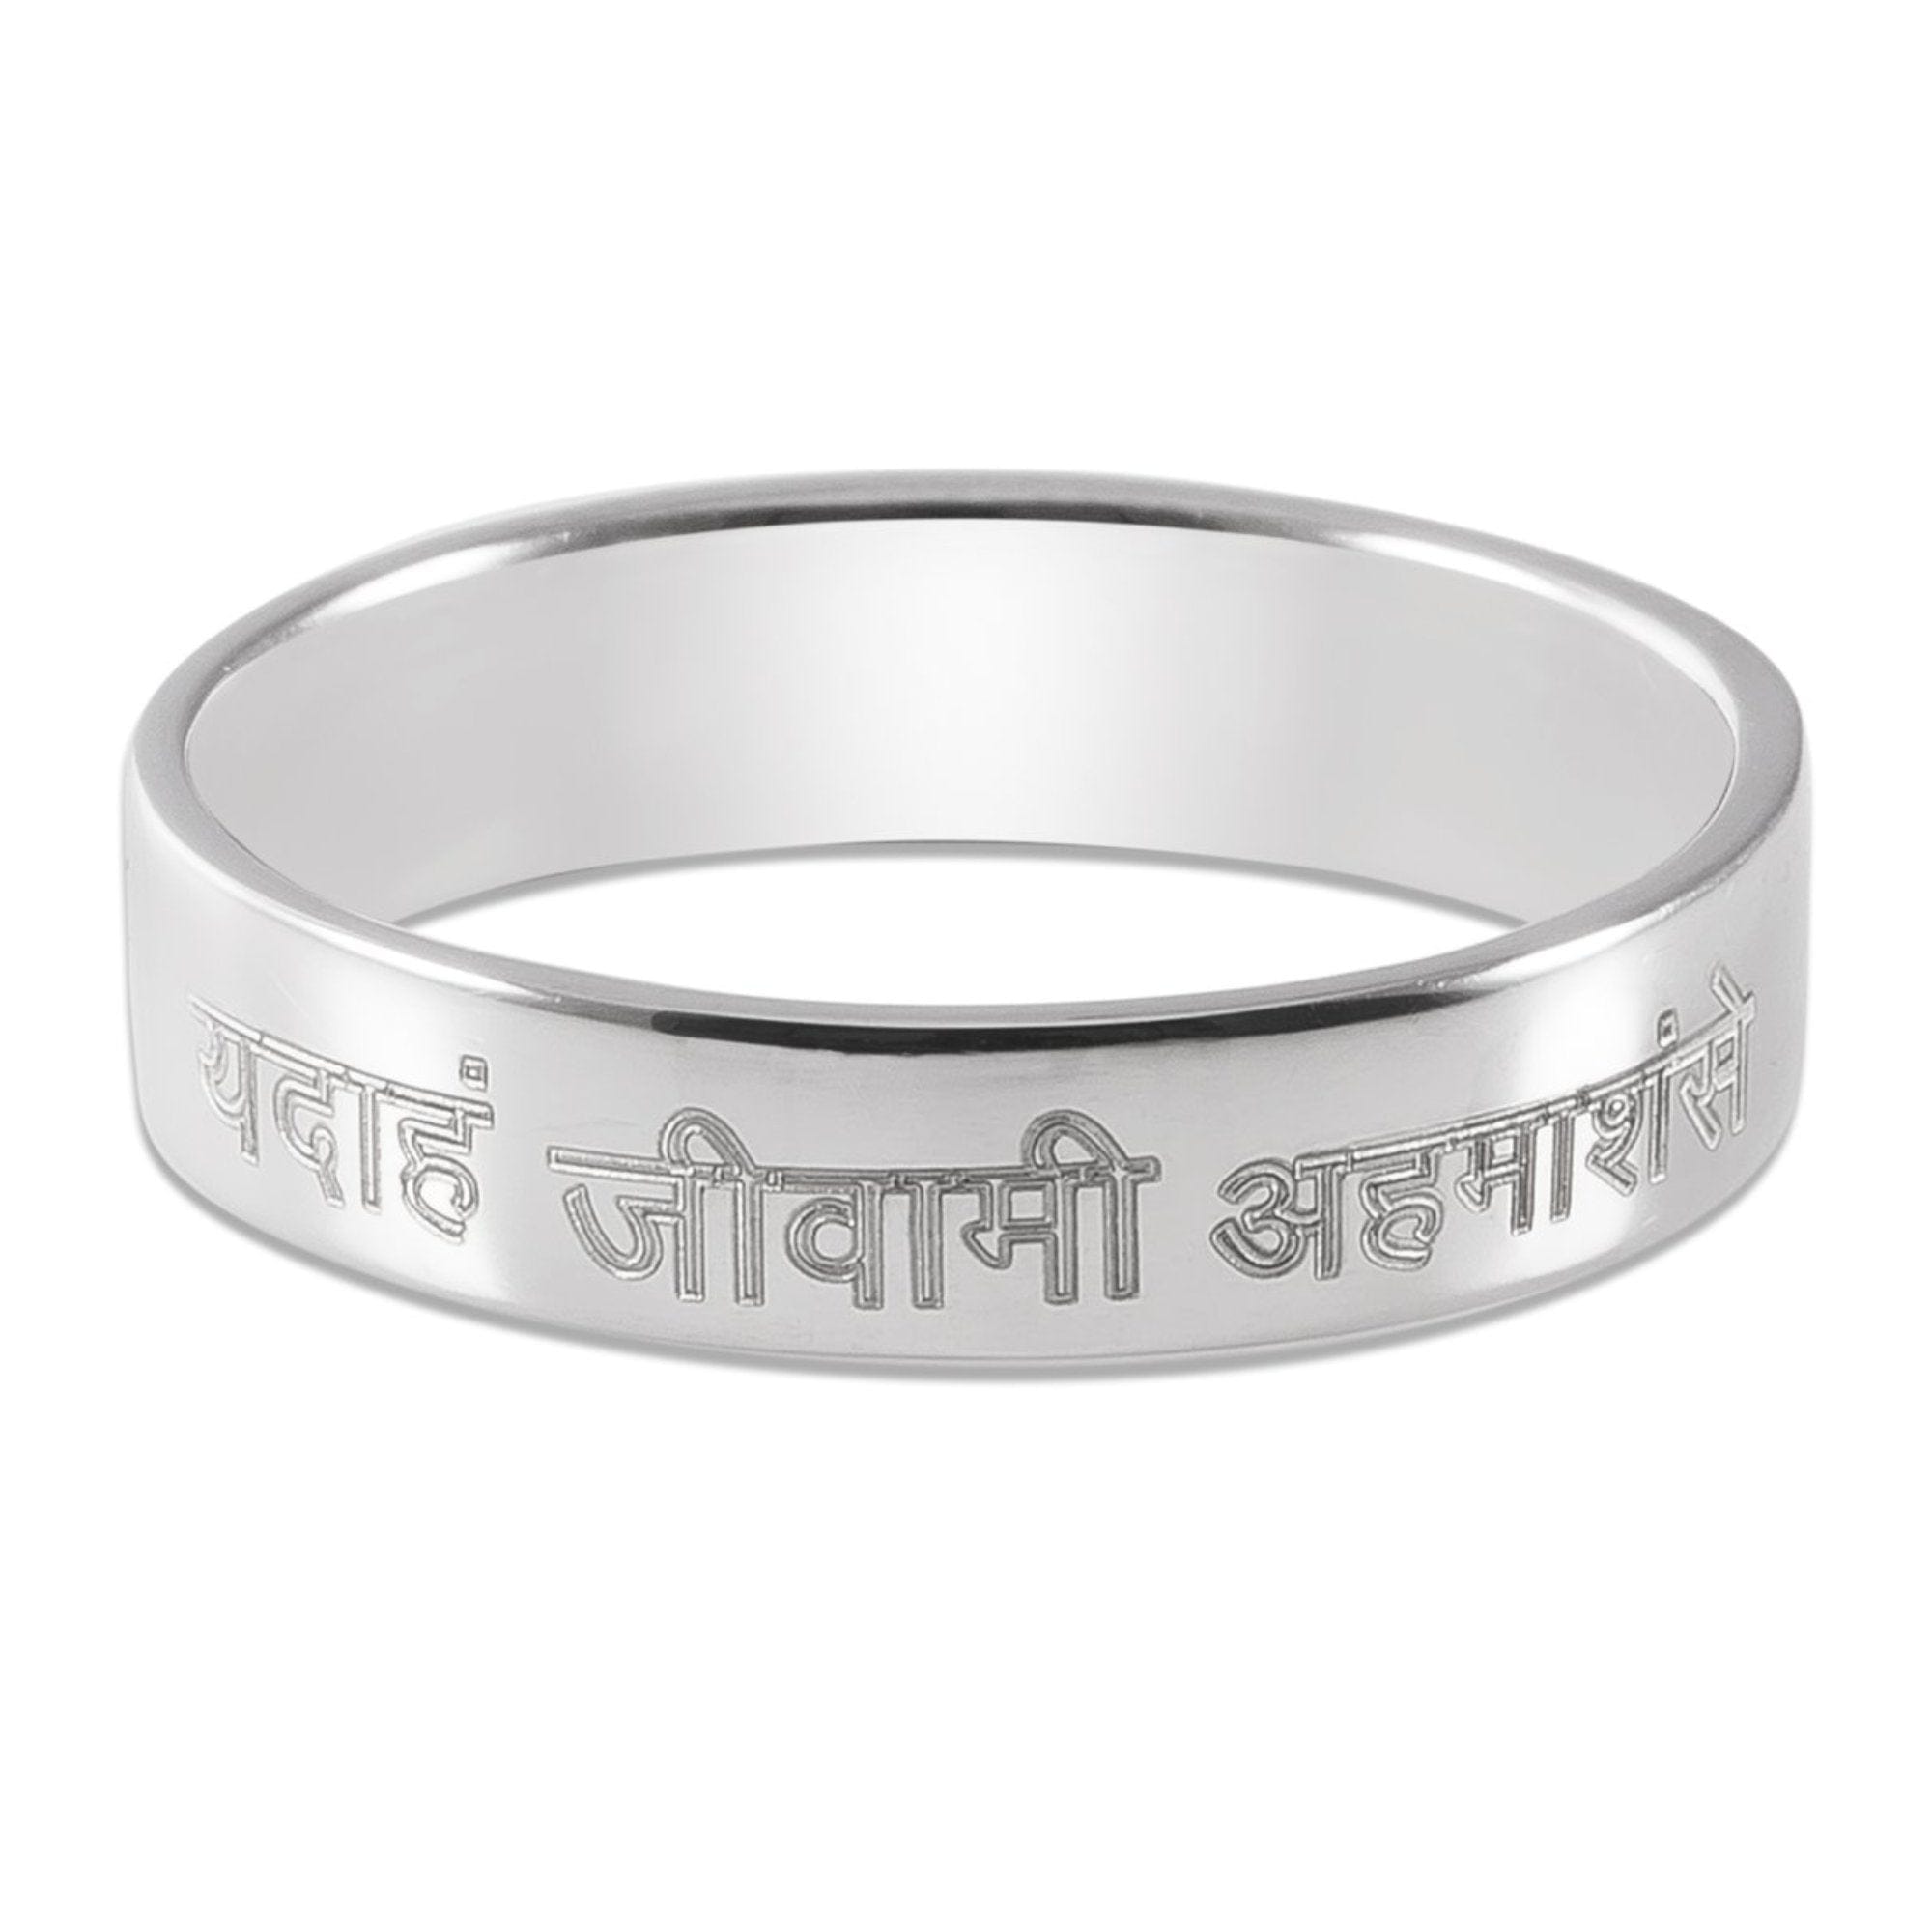 jewelove telugu hindi sanskrit non english language engraved platinum rings jl pt 545 men s band only 5mm 1520638853160